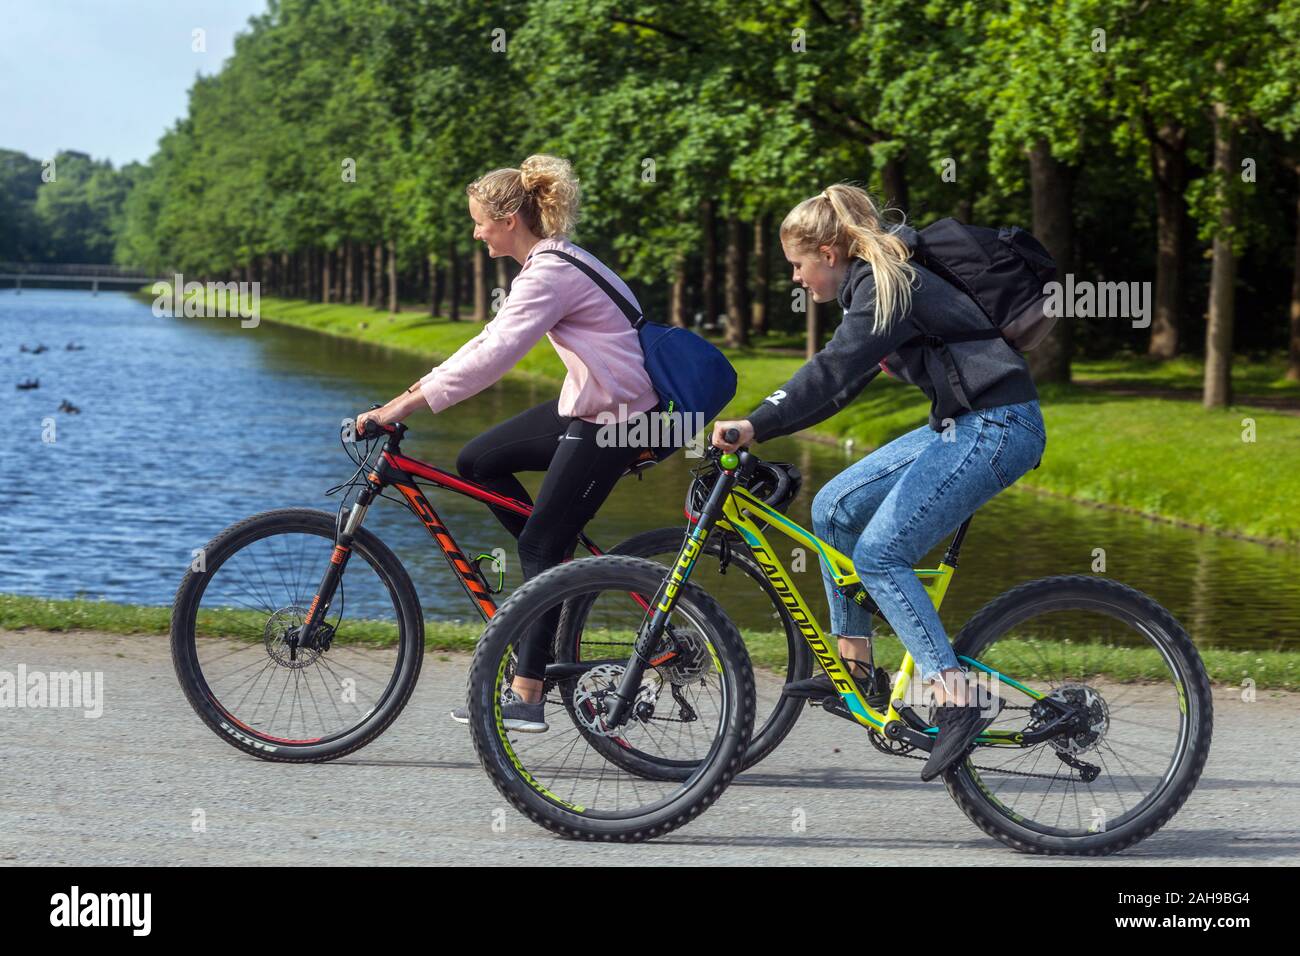 Junge deutsche Frauen Fahrrad fahren Deutschland Radfahren Kassel Park  Gesundes Lifestyle-Fahrrad Stockfotografie - Alamy